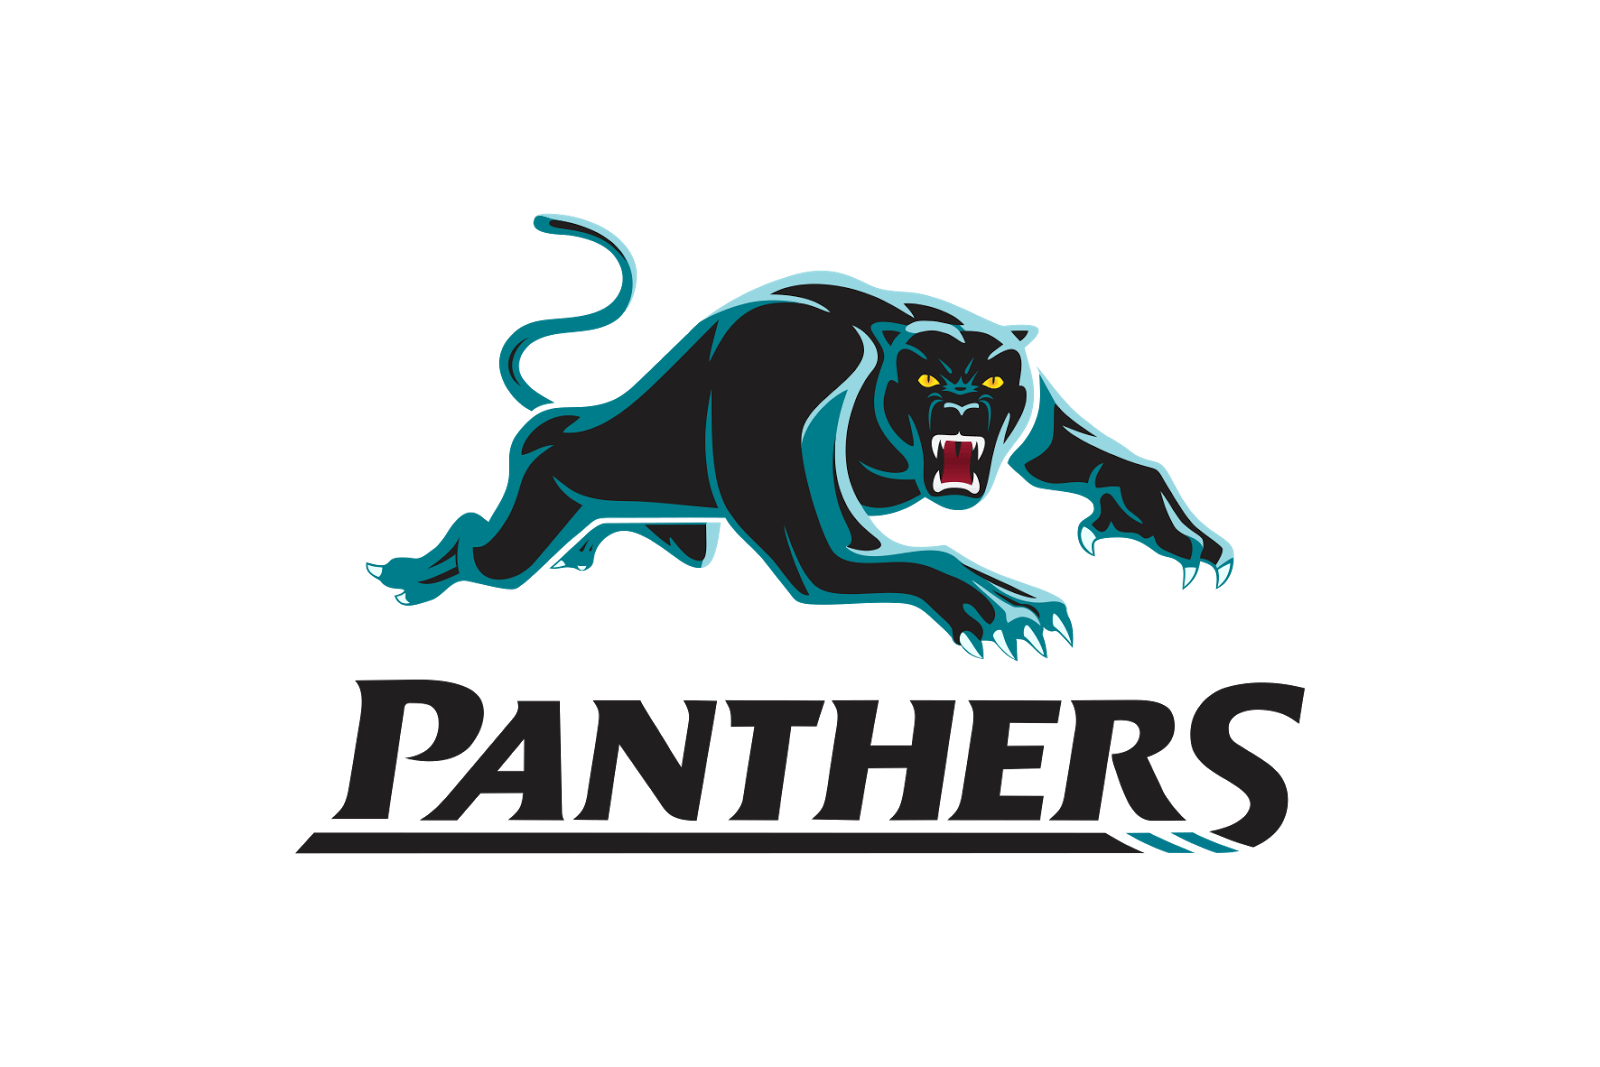 Penrith panthers Logos